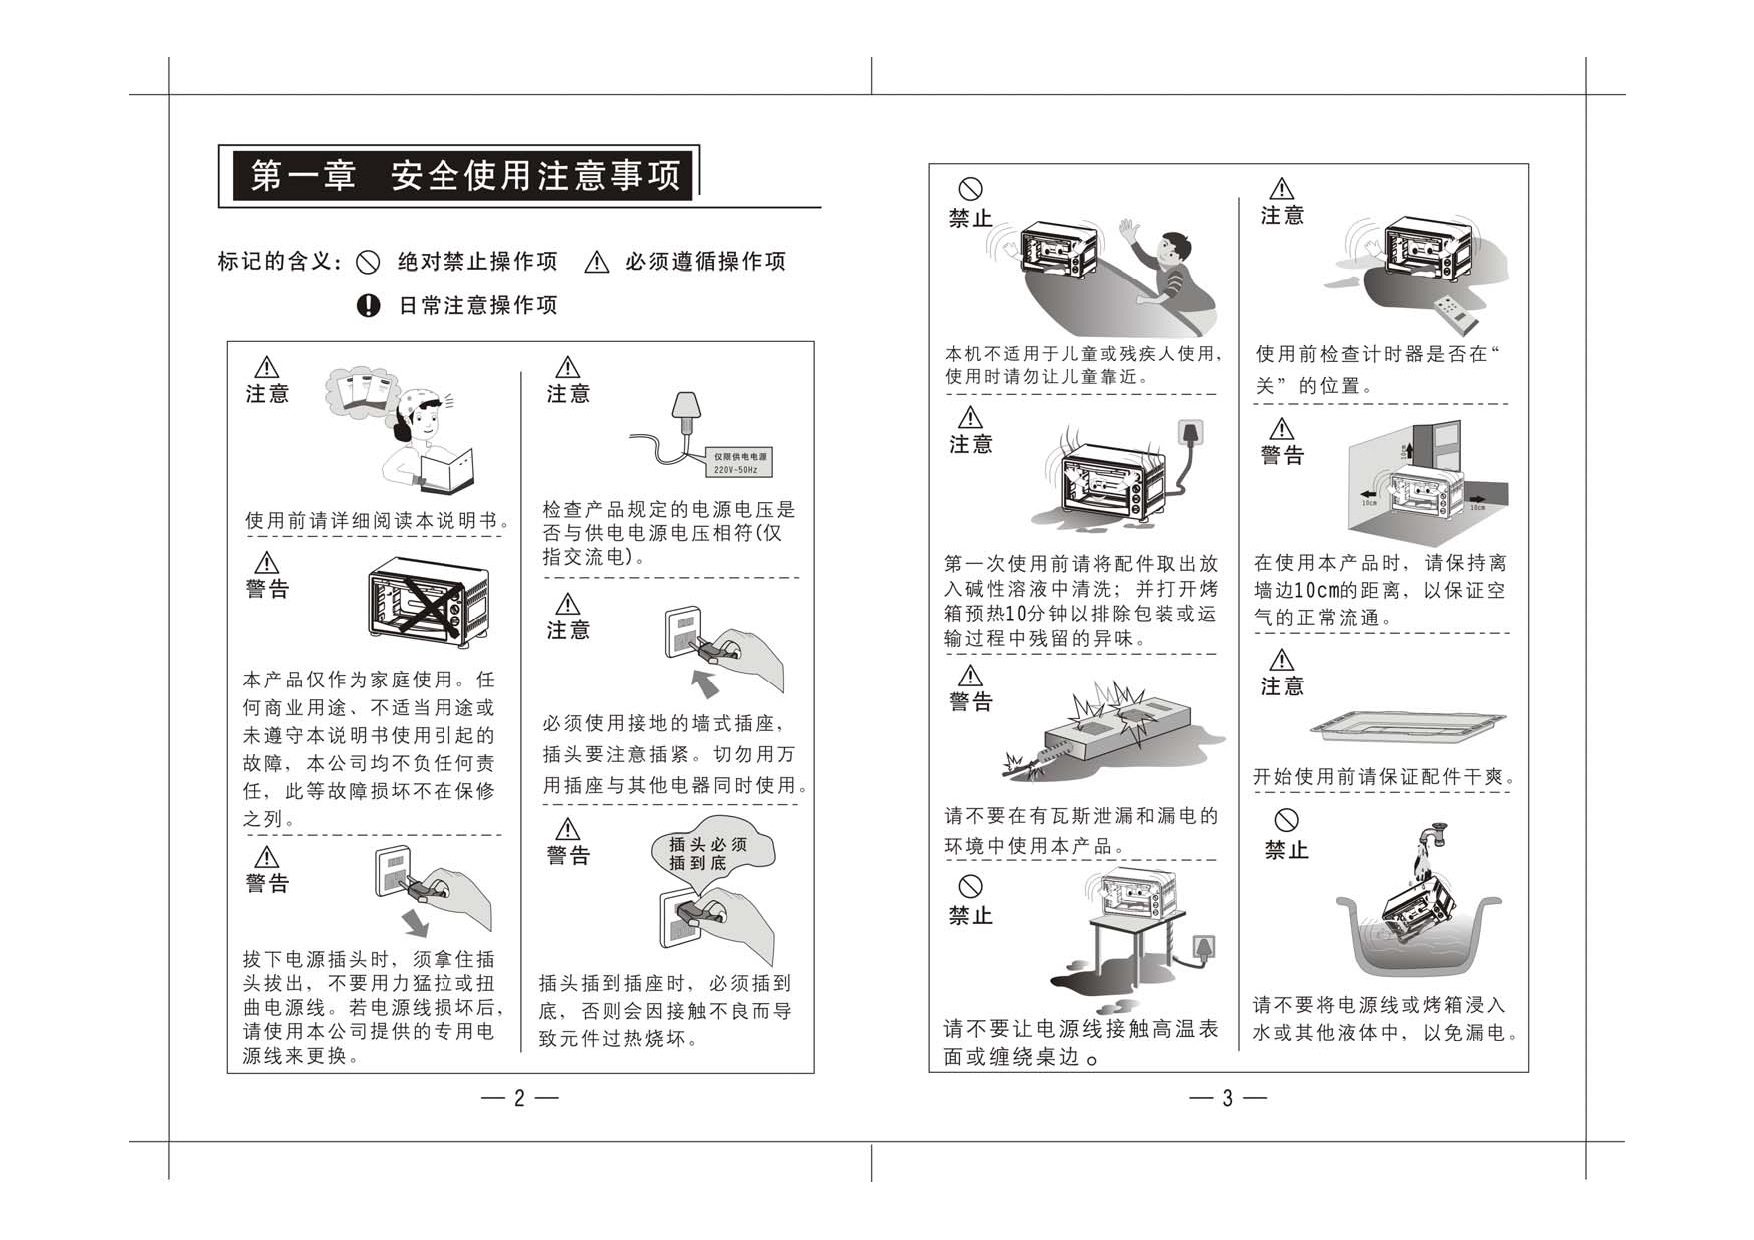 九阳 Joyyoung KX-30J17, KX-35J20 使用说明书 第2页